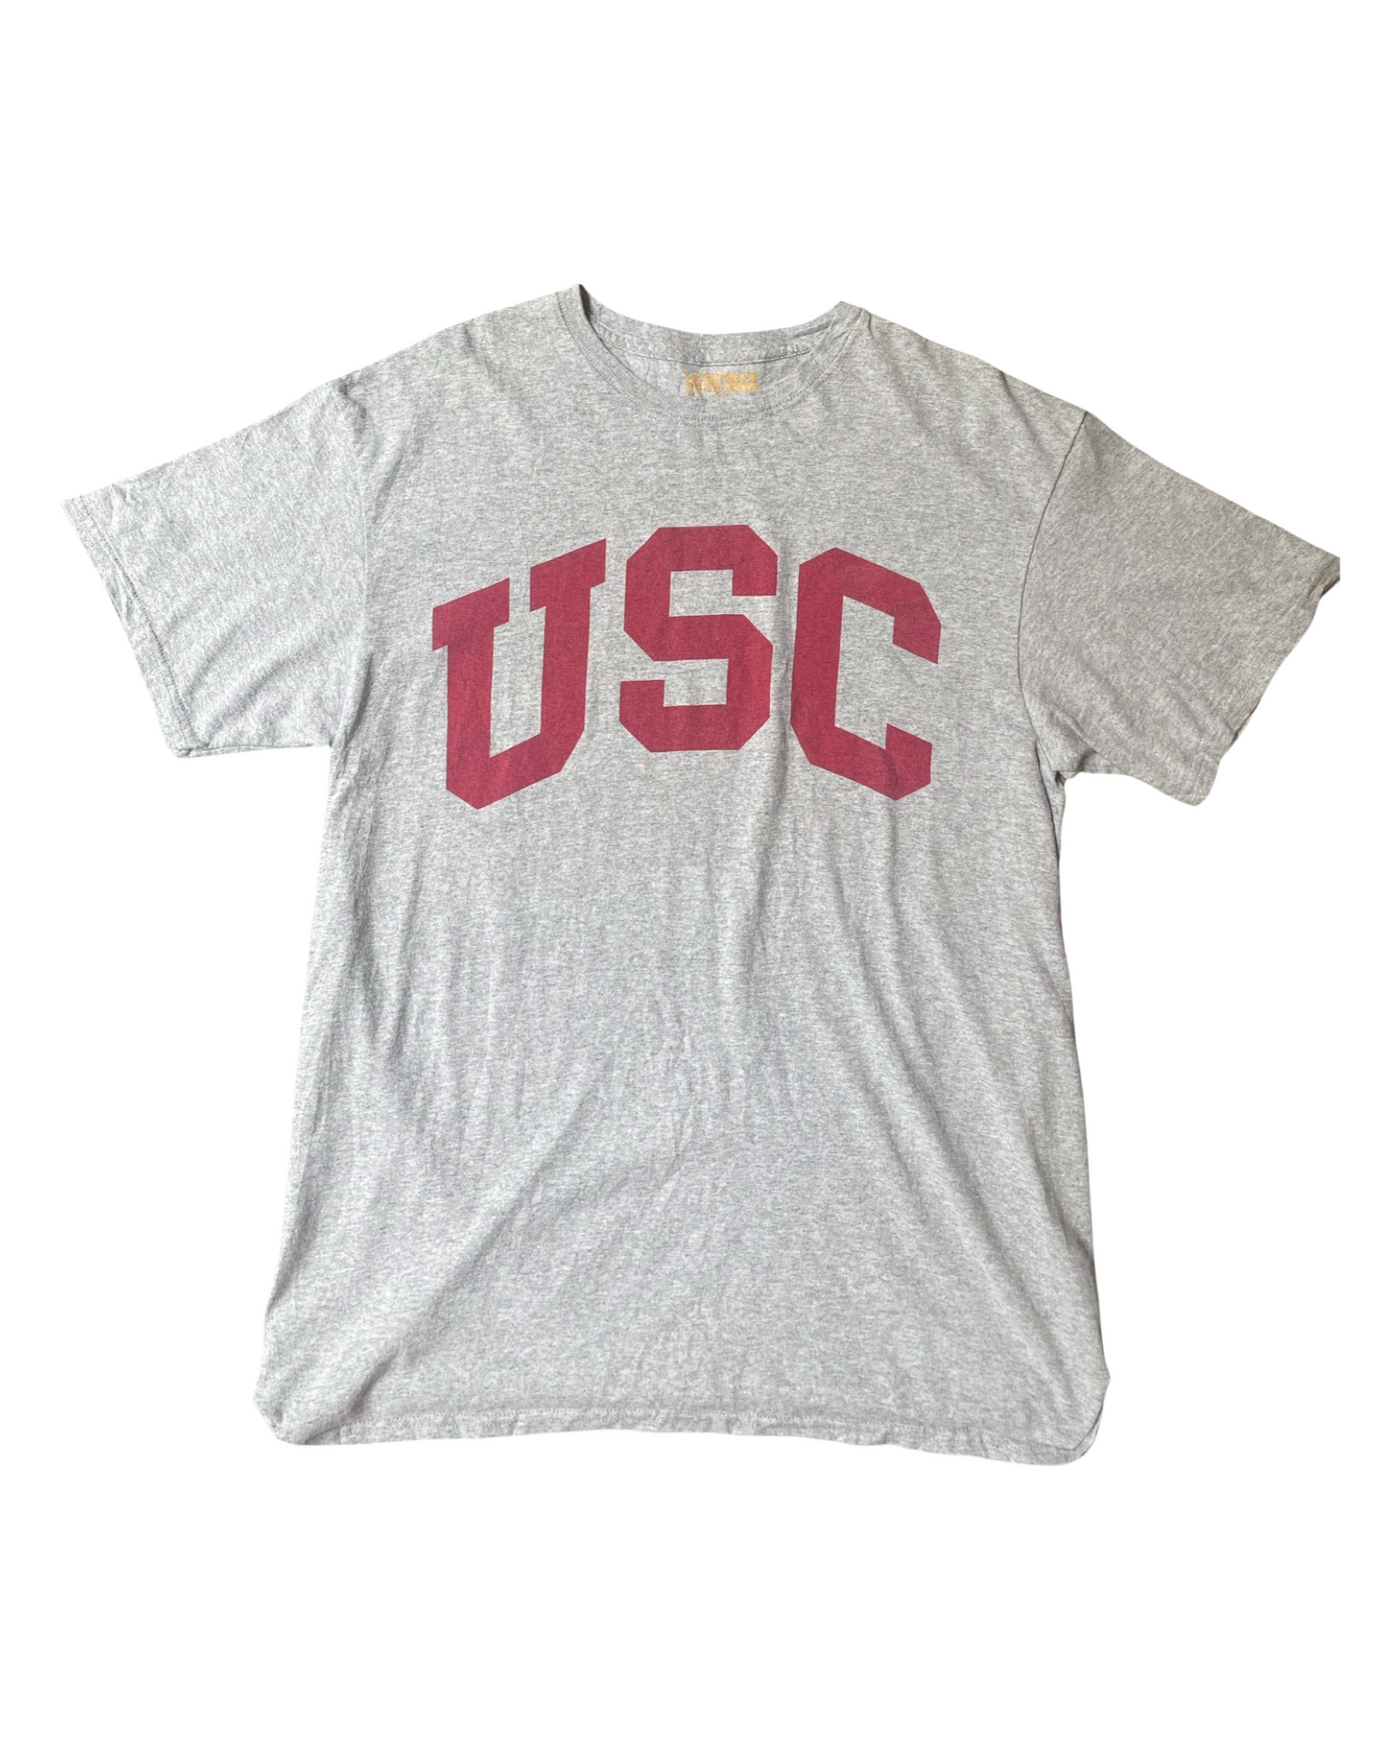 Vintage College T-Shirt Size L